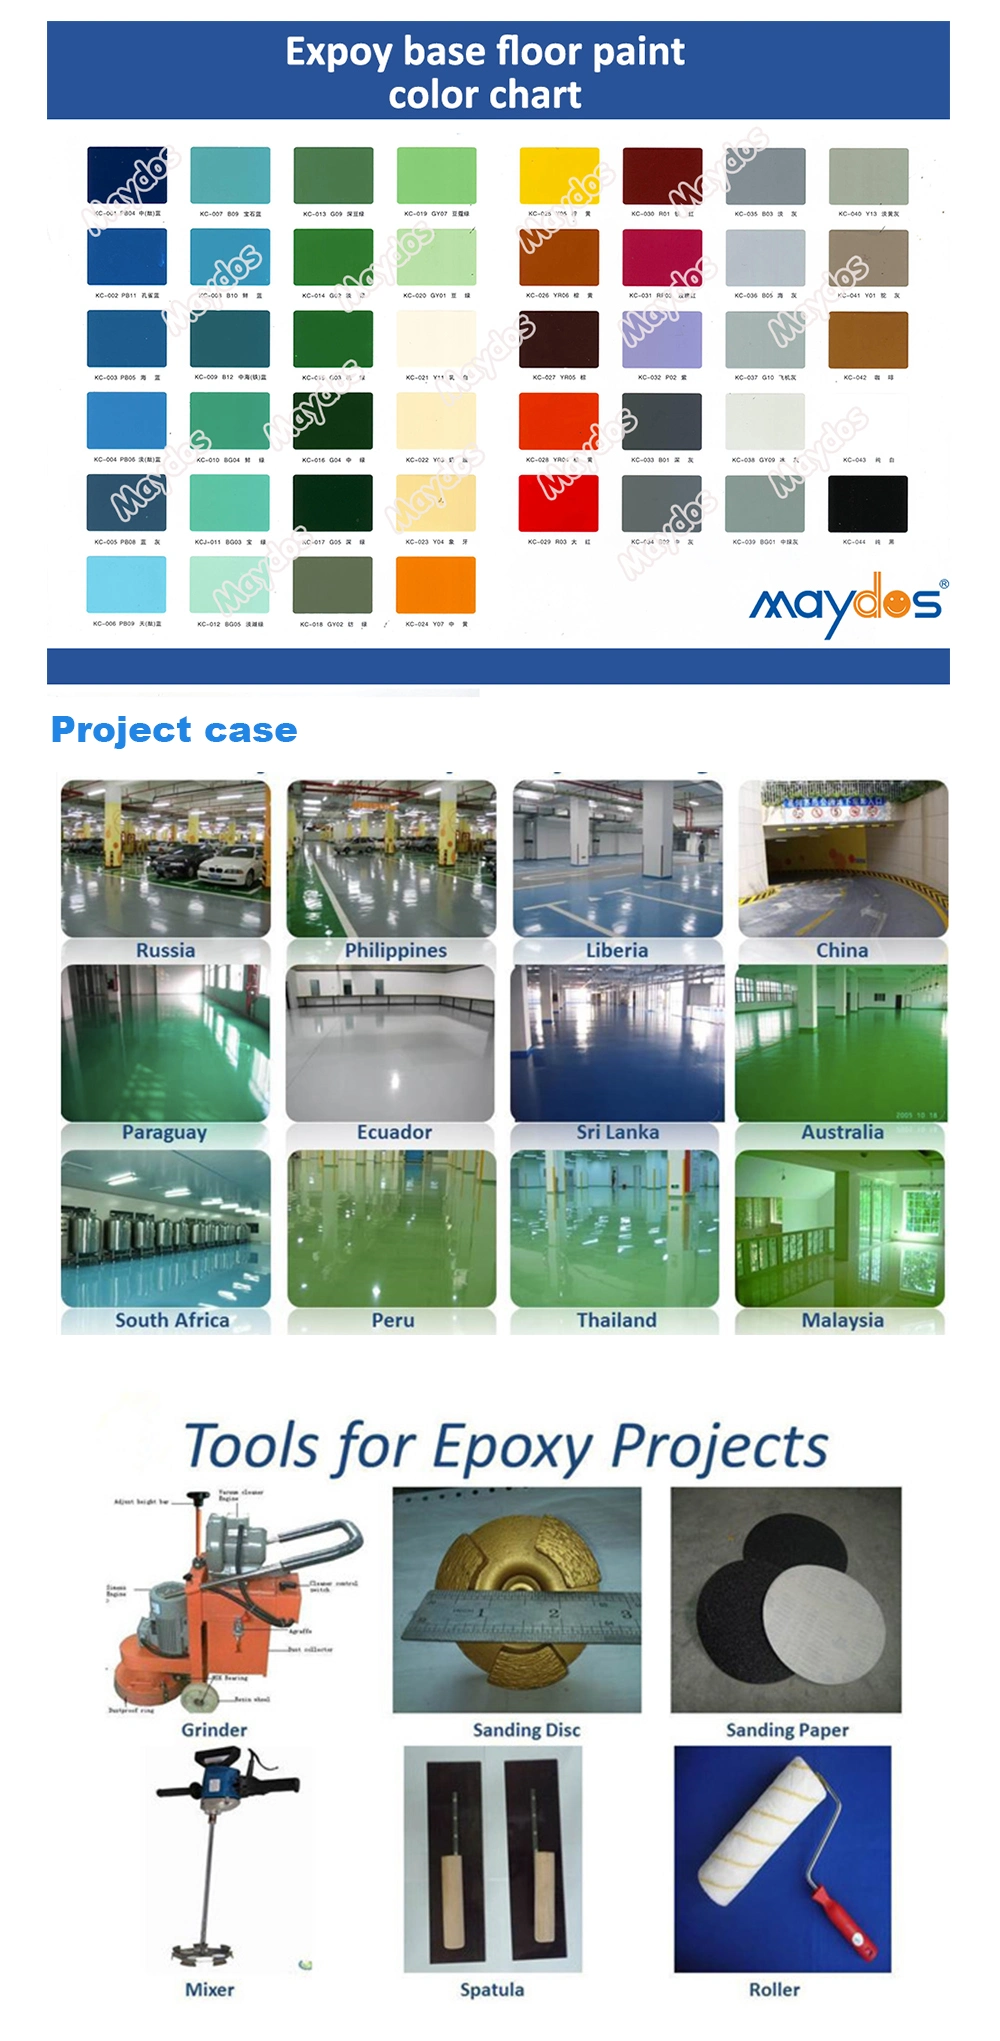 Environmental Friendly Scratching Resistance Epoxy Resin Floor Coatings (JD1000)